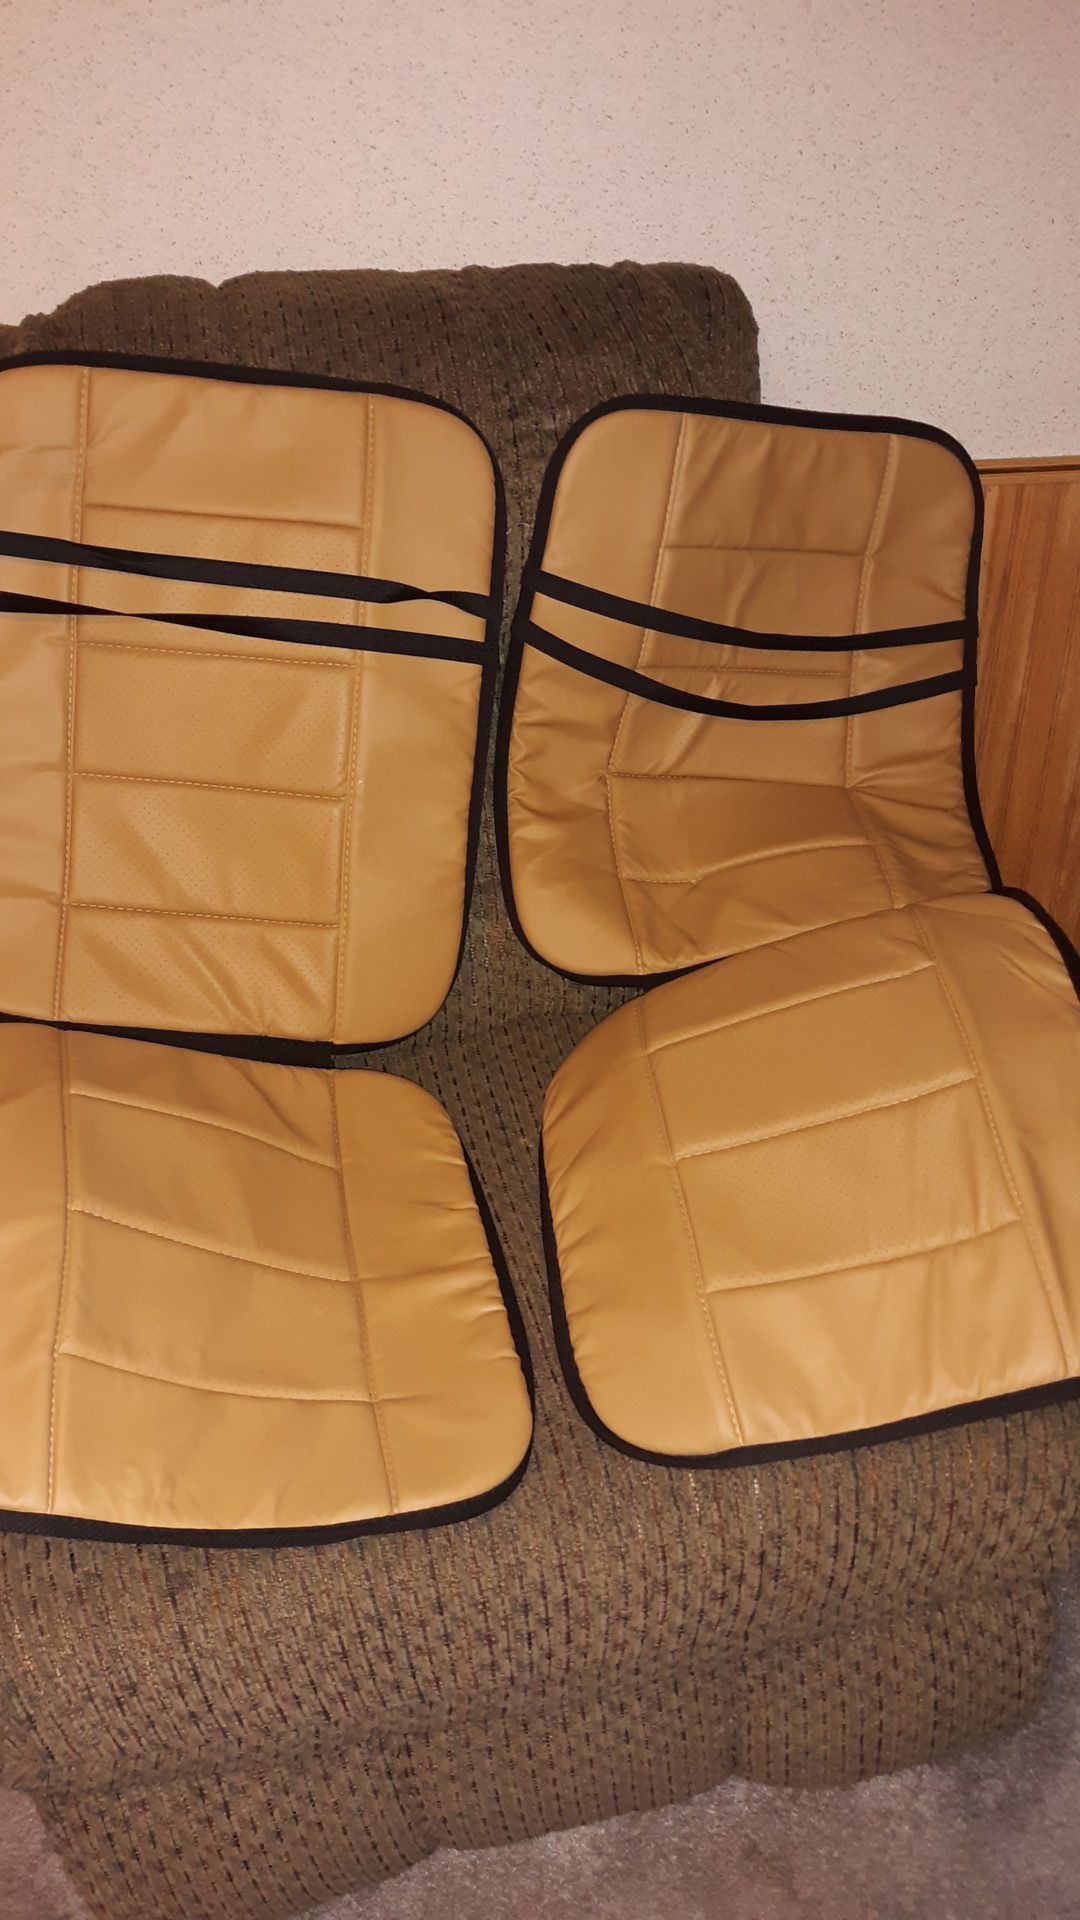 Car seat cushions